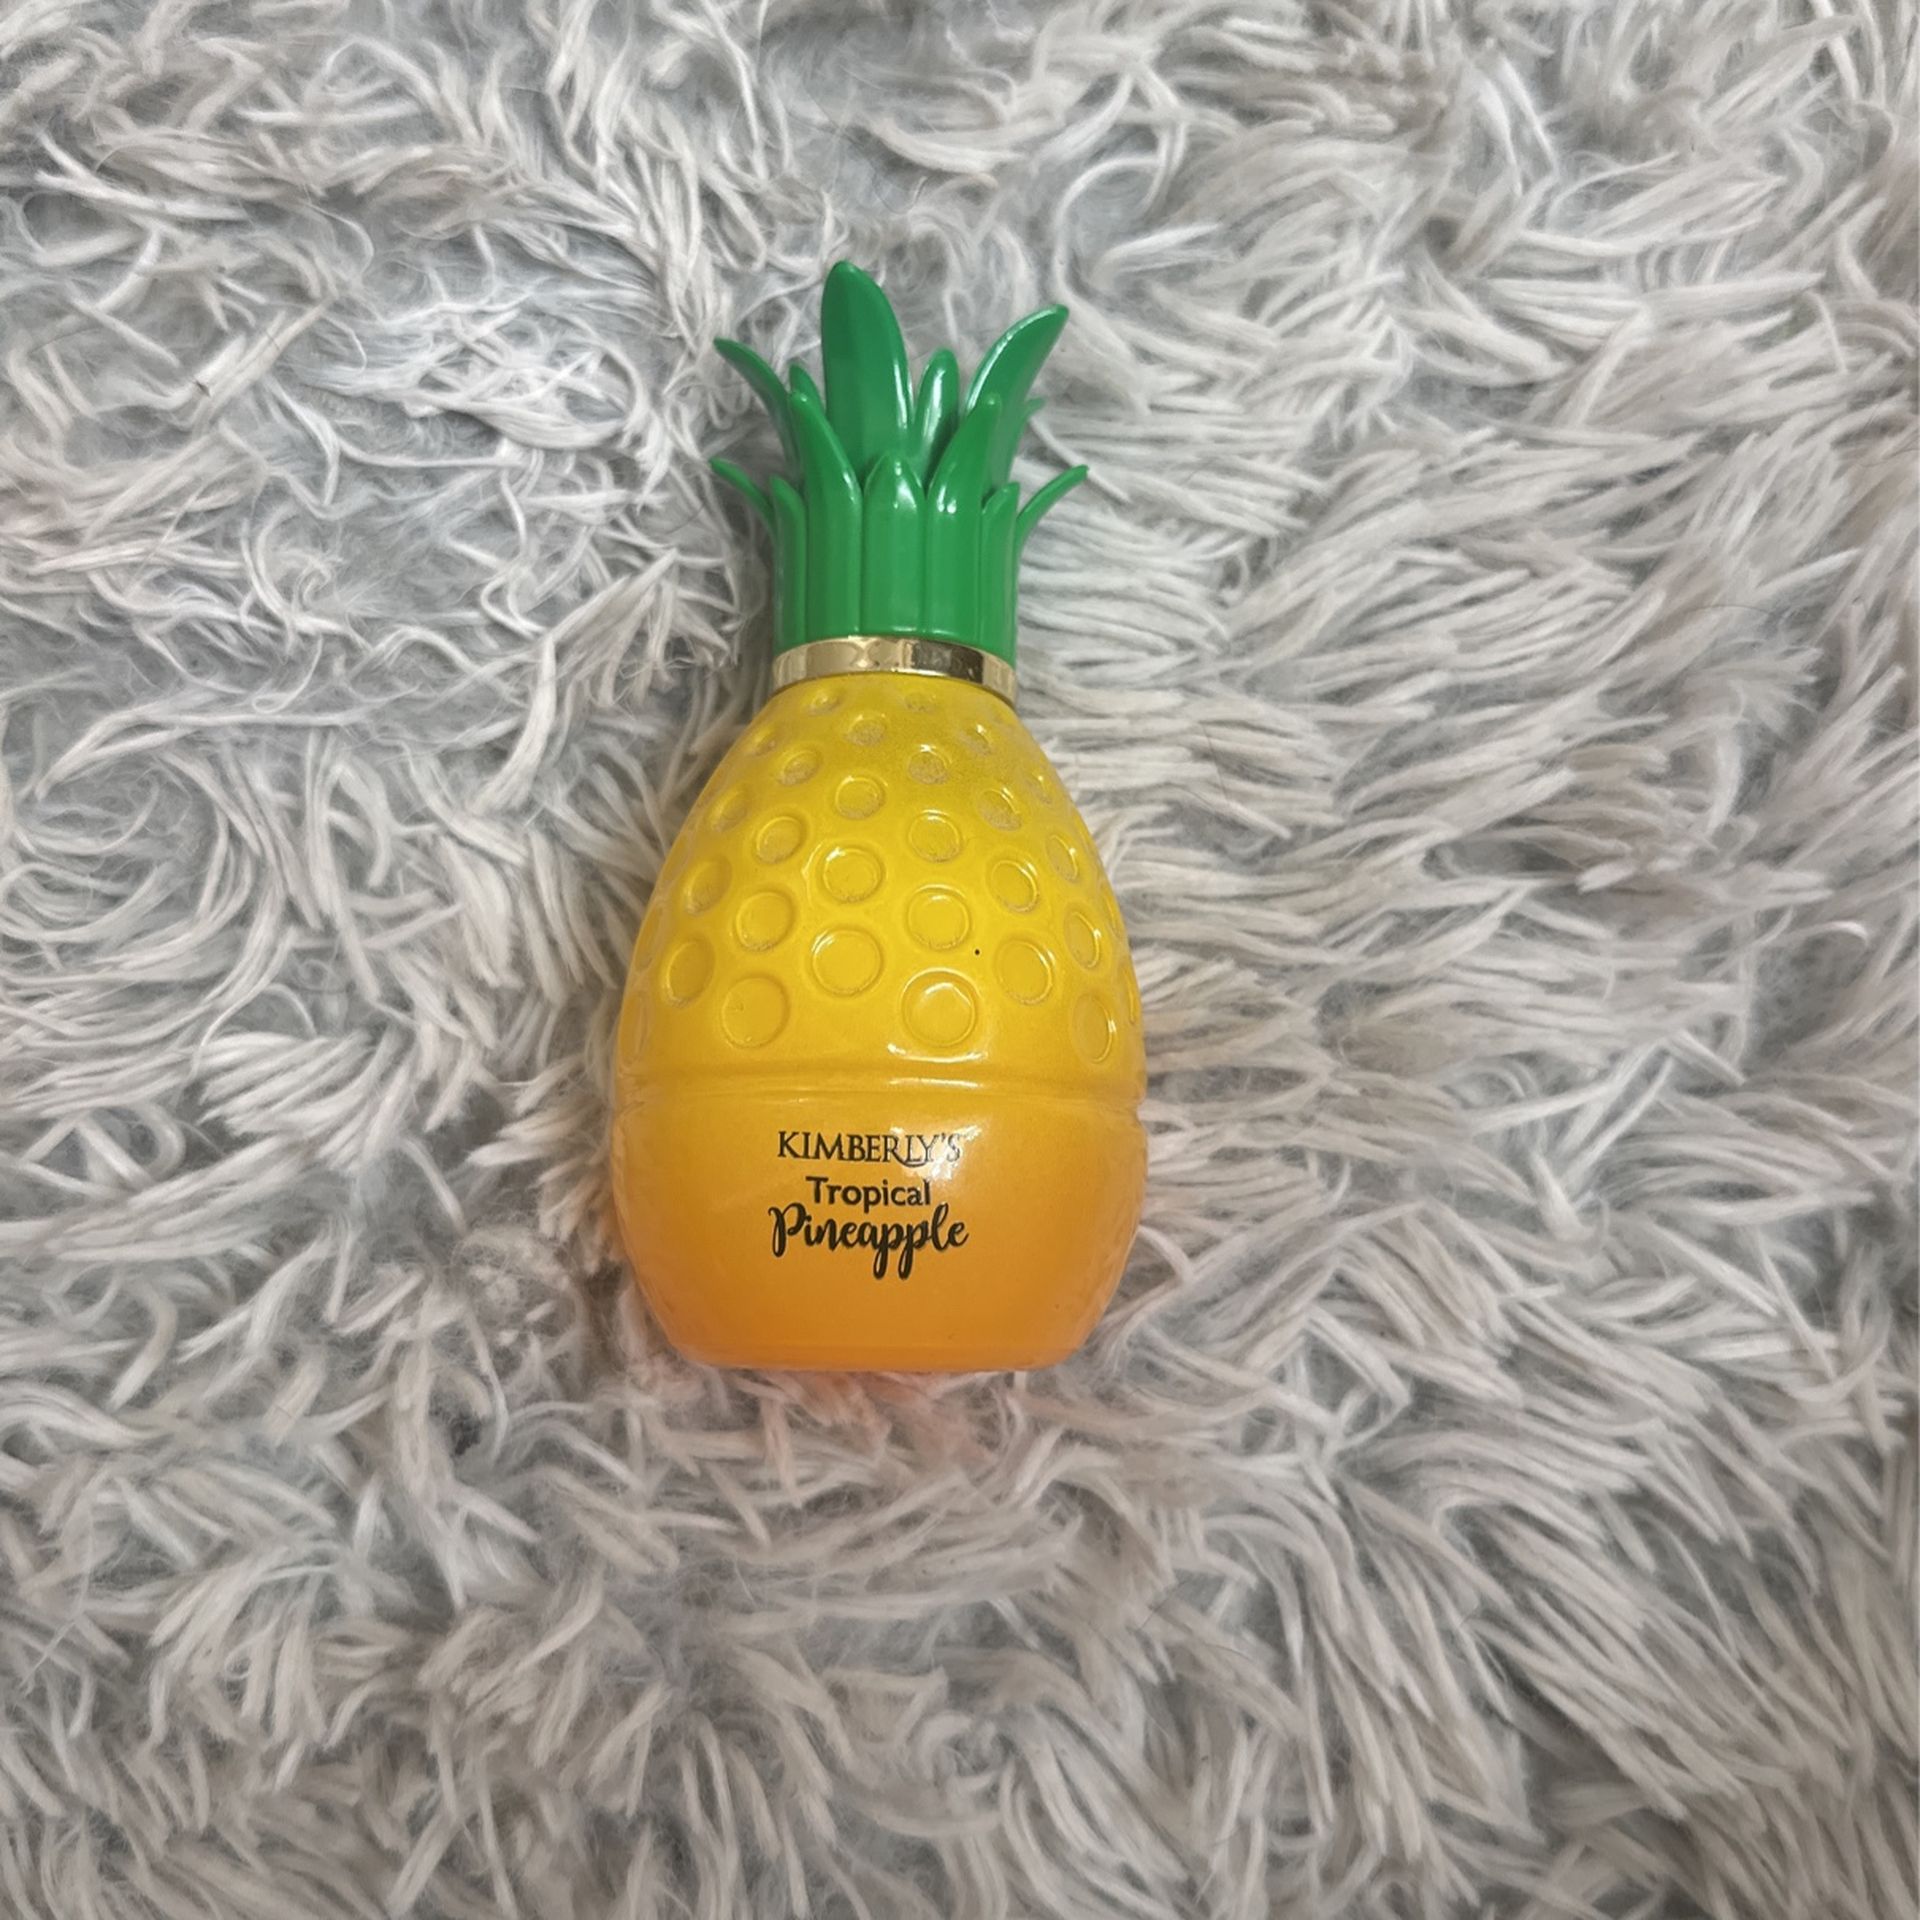 Kimberly’s Tropical Pineapple Perfume